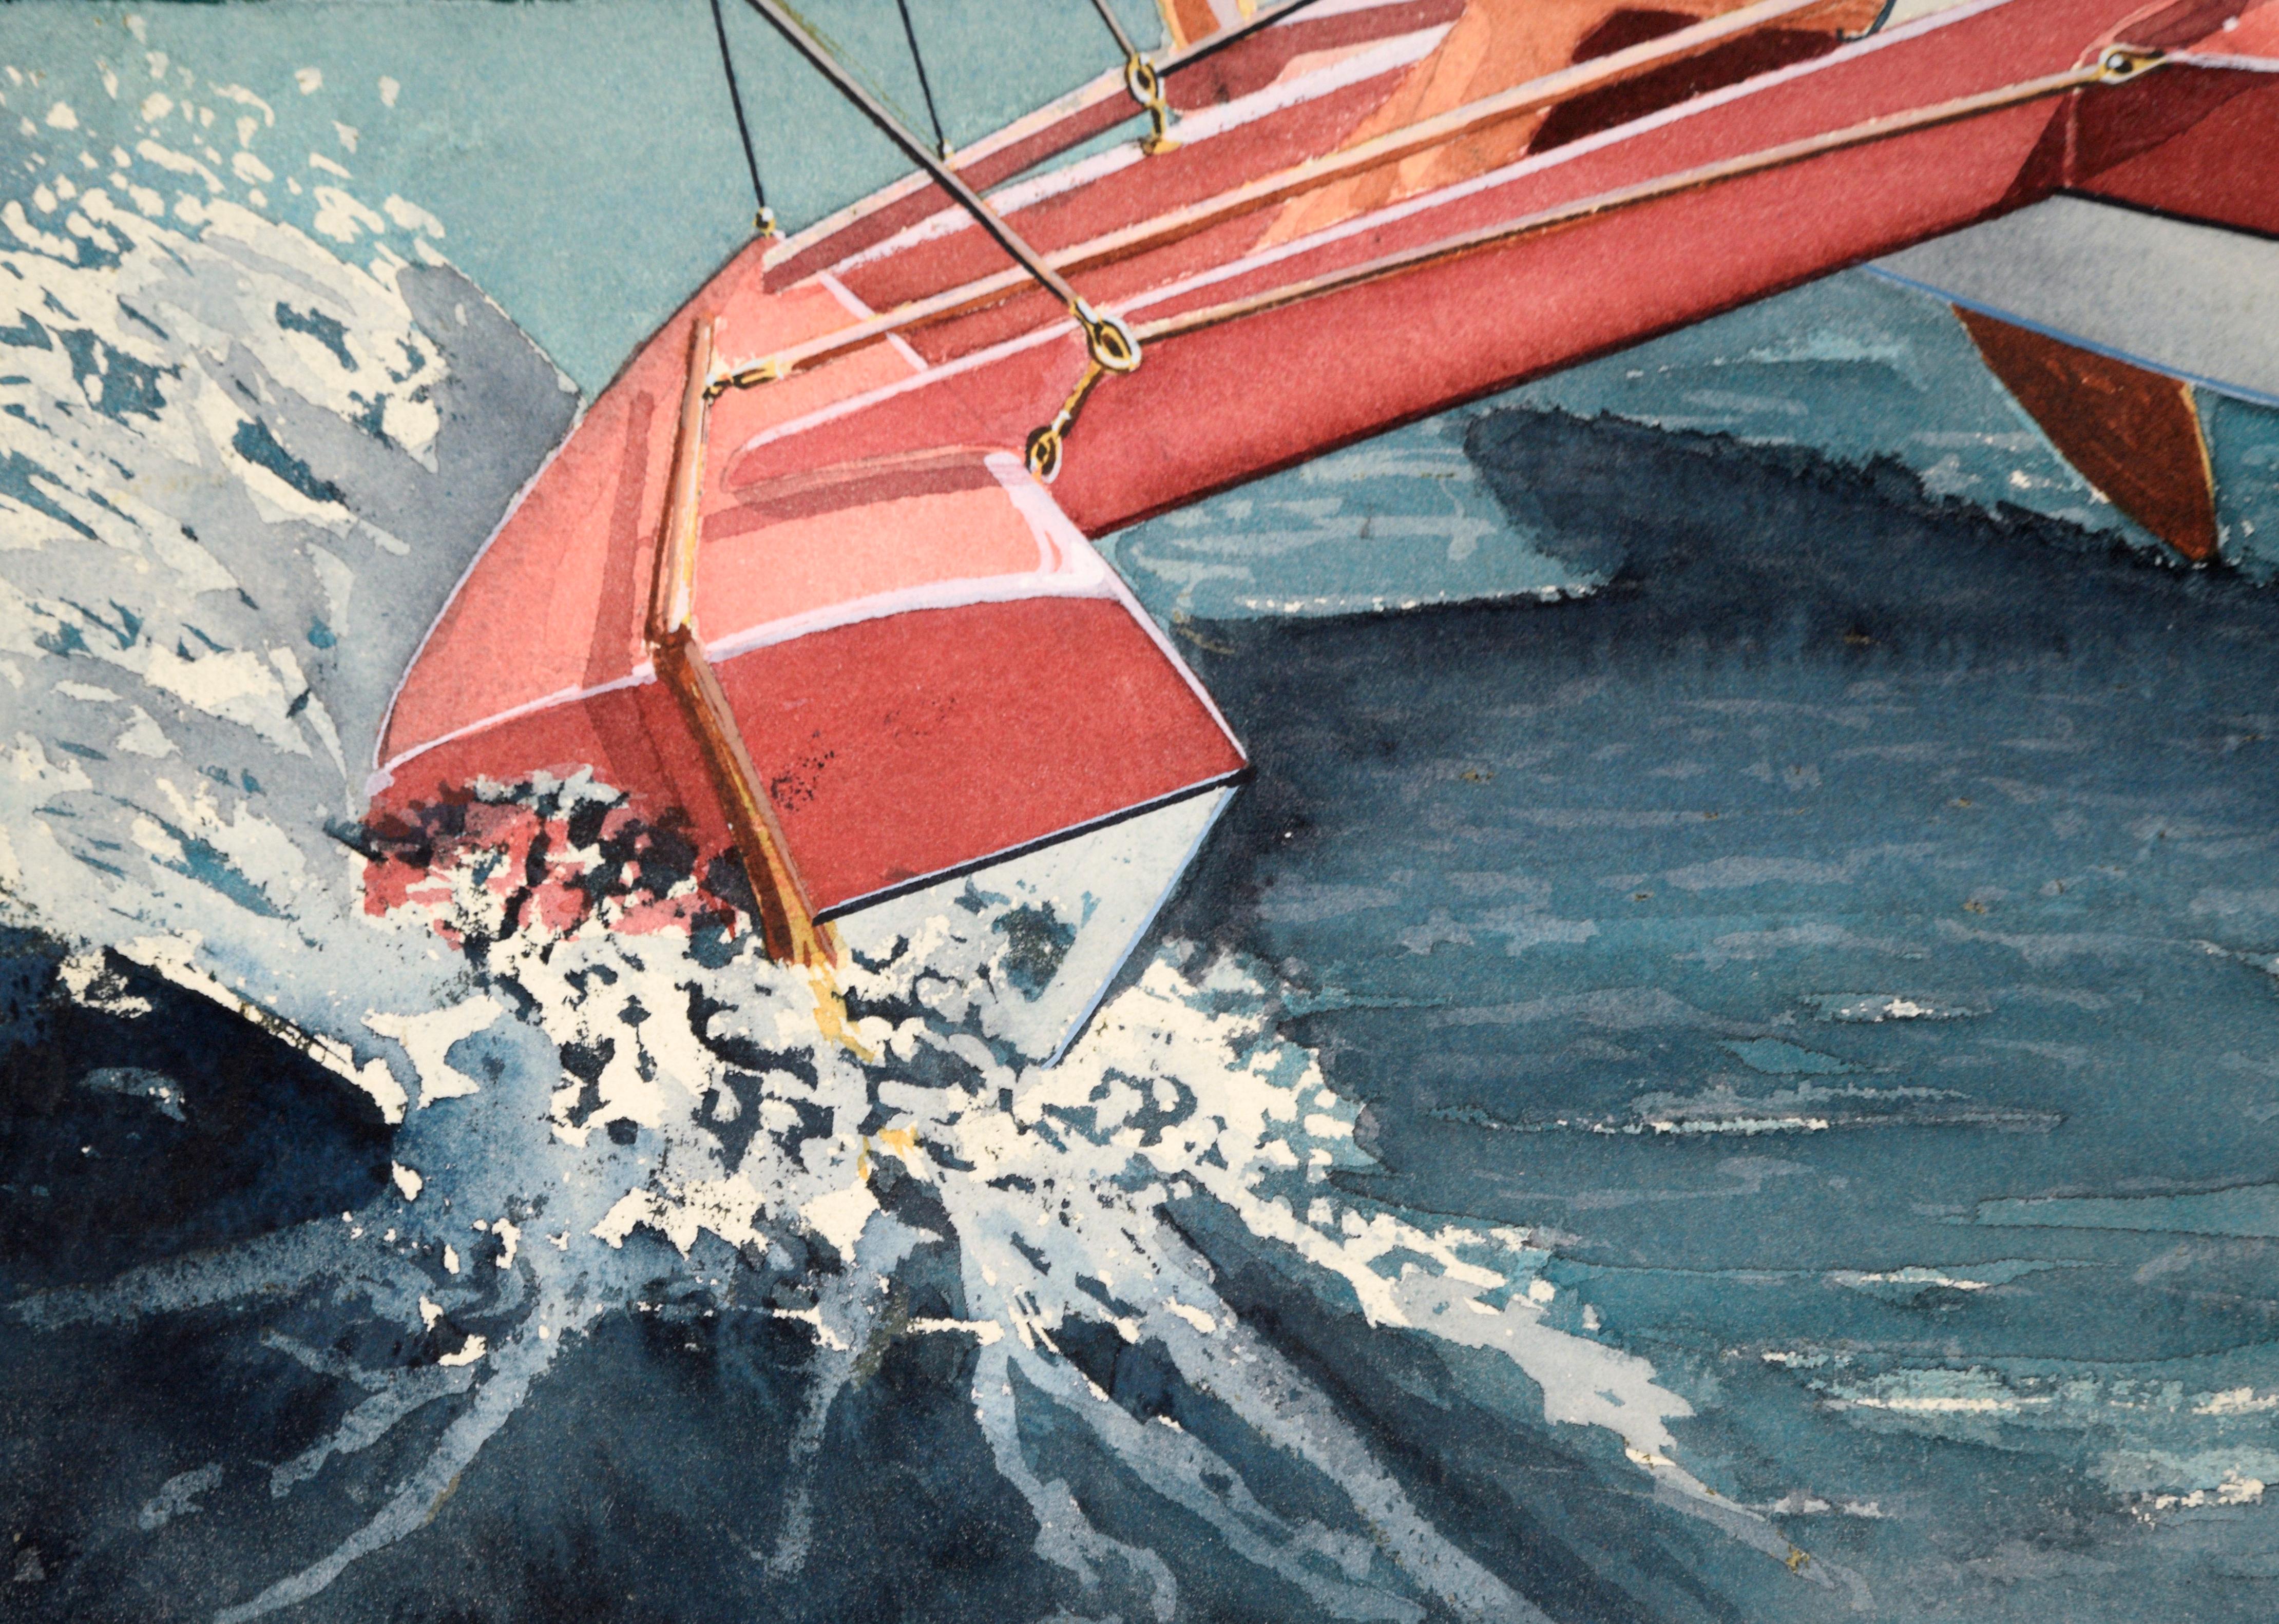 Detaillierte Illustration eines Seglers in einem Katamaran von Edward T. Liljenwall (Amerikaner, 1943-2010). Das Segelboot ist in einem extremen Winkel geneigt, und der Segler lehnt sich über den Rand hinaus, um das Gleichgewicht zu halten. Auf der